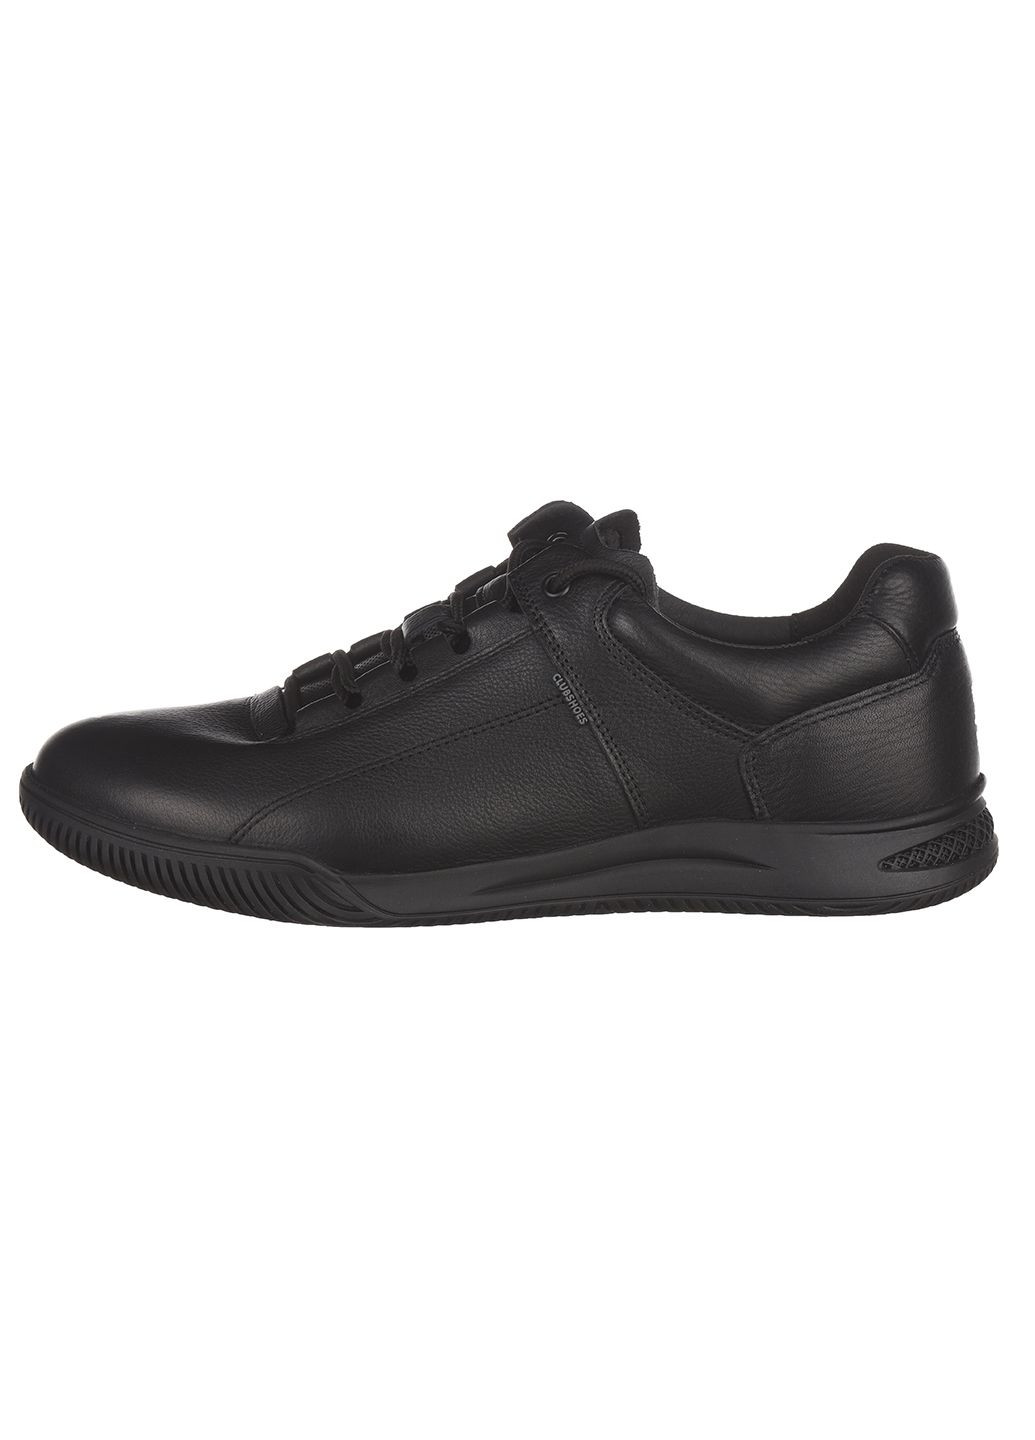 Черные демисезонные мужские кроссовки из кожи повседневные Clubshoes